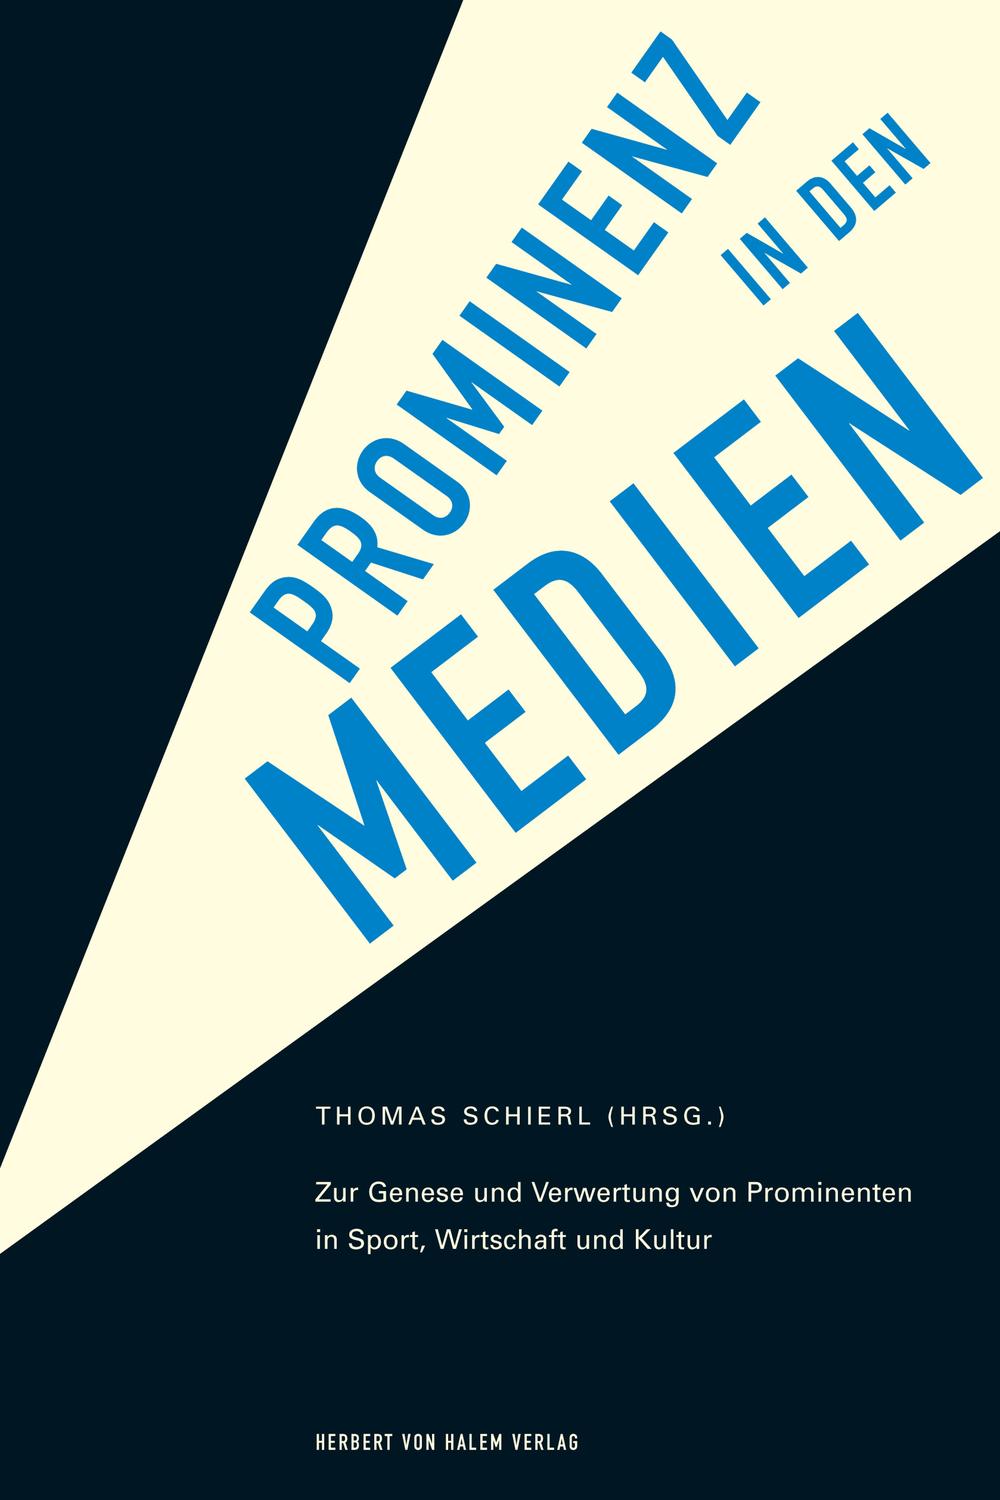 Prominenz in den Medien - Thomas Schierl